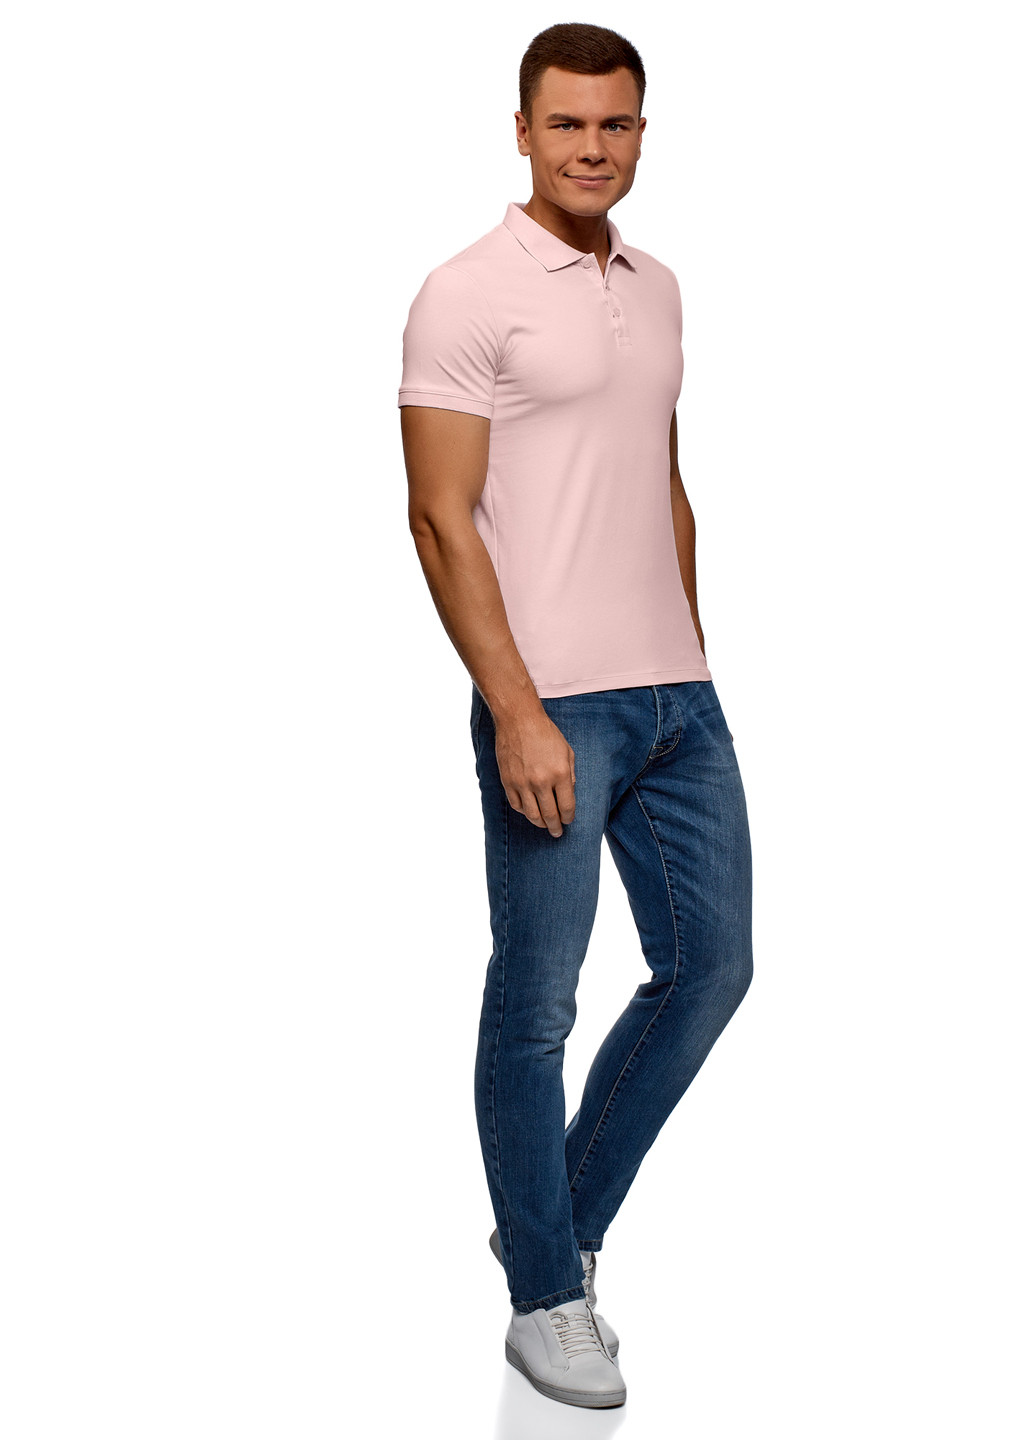 Светло-розовая футболка-поло для мужчин Oodji